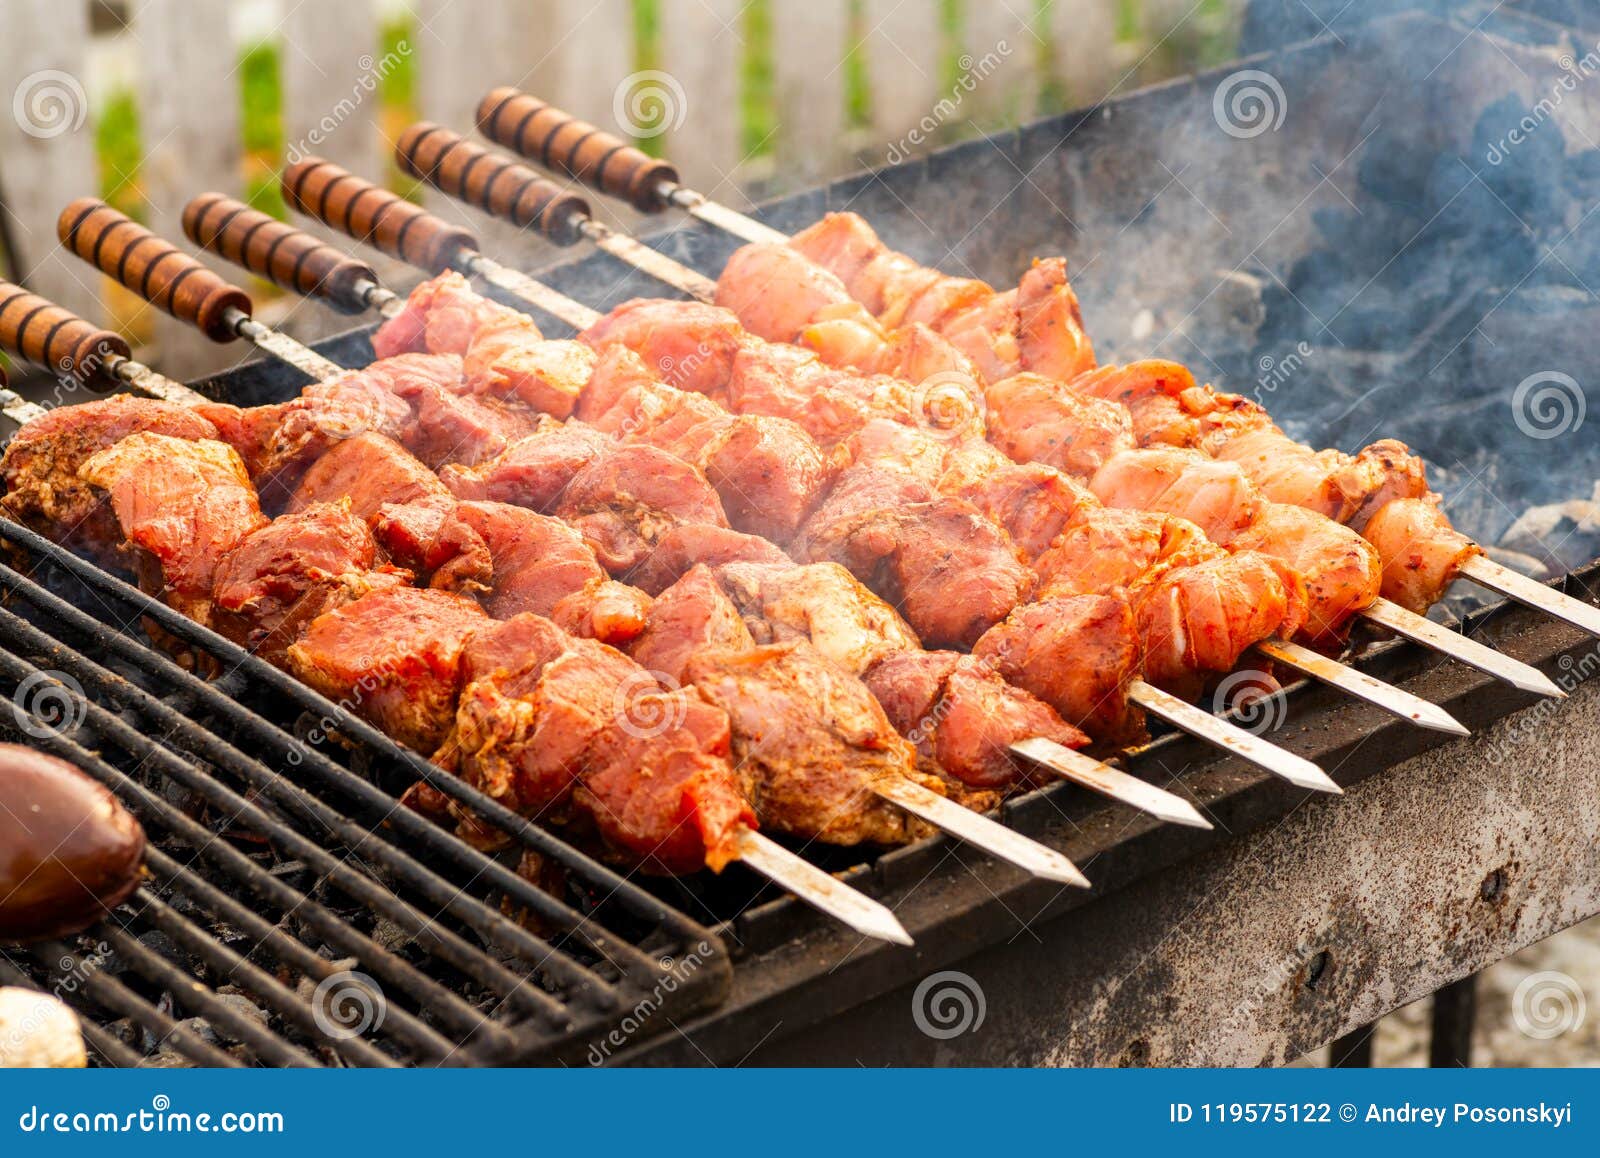 Carne En Los Pinchos Un Fuego Abierto Foto de archivo - Imagen de pollo,  mano: 119575122